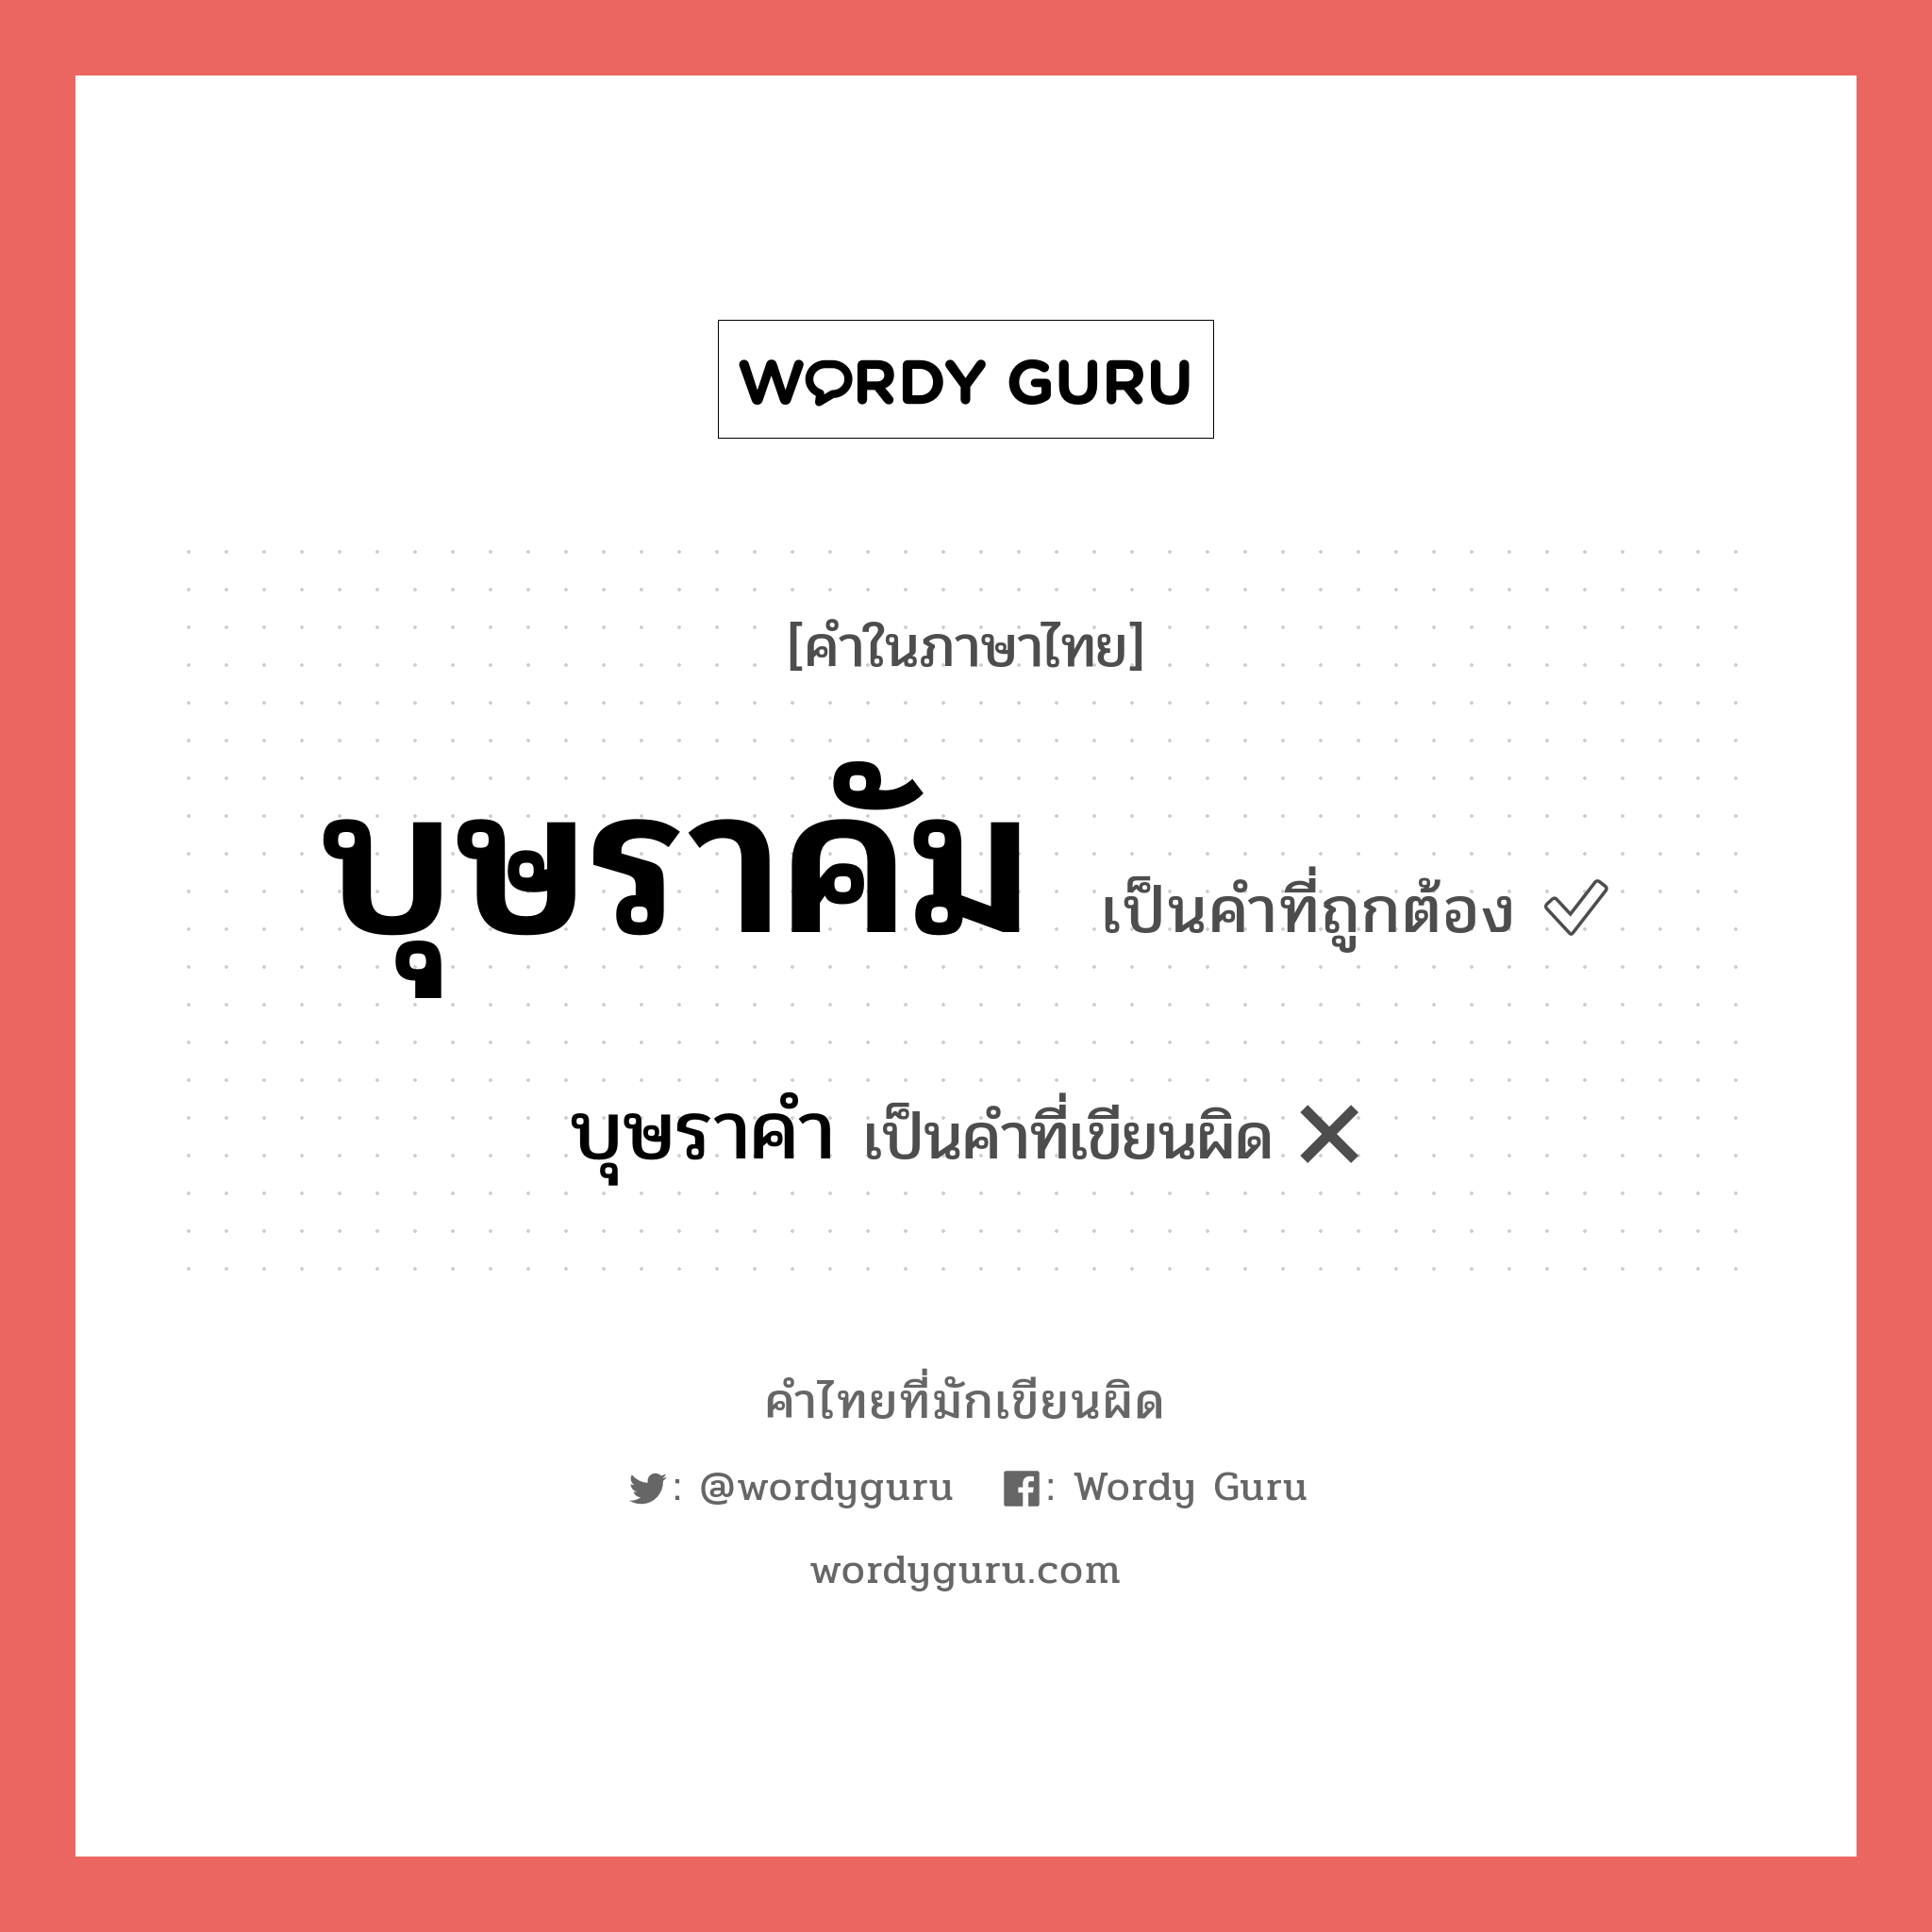 บุษราคัม หรือ บุษราคำ คำไหนเขียนถูก?, คำในภาษาไทยที่มักเขียนผิด บุษราคัม คำที่ผิด ❌ บุษราคำ